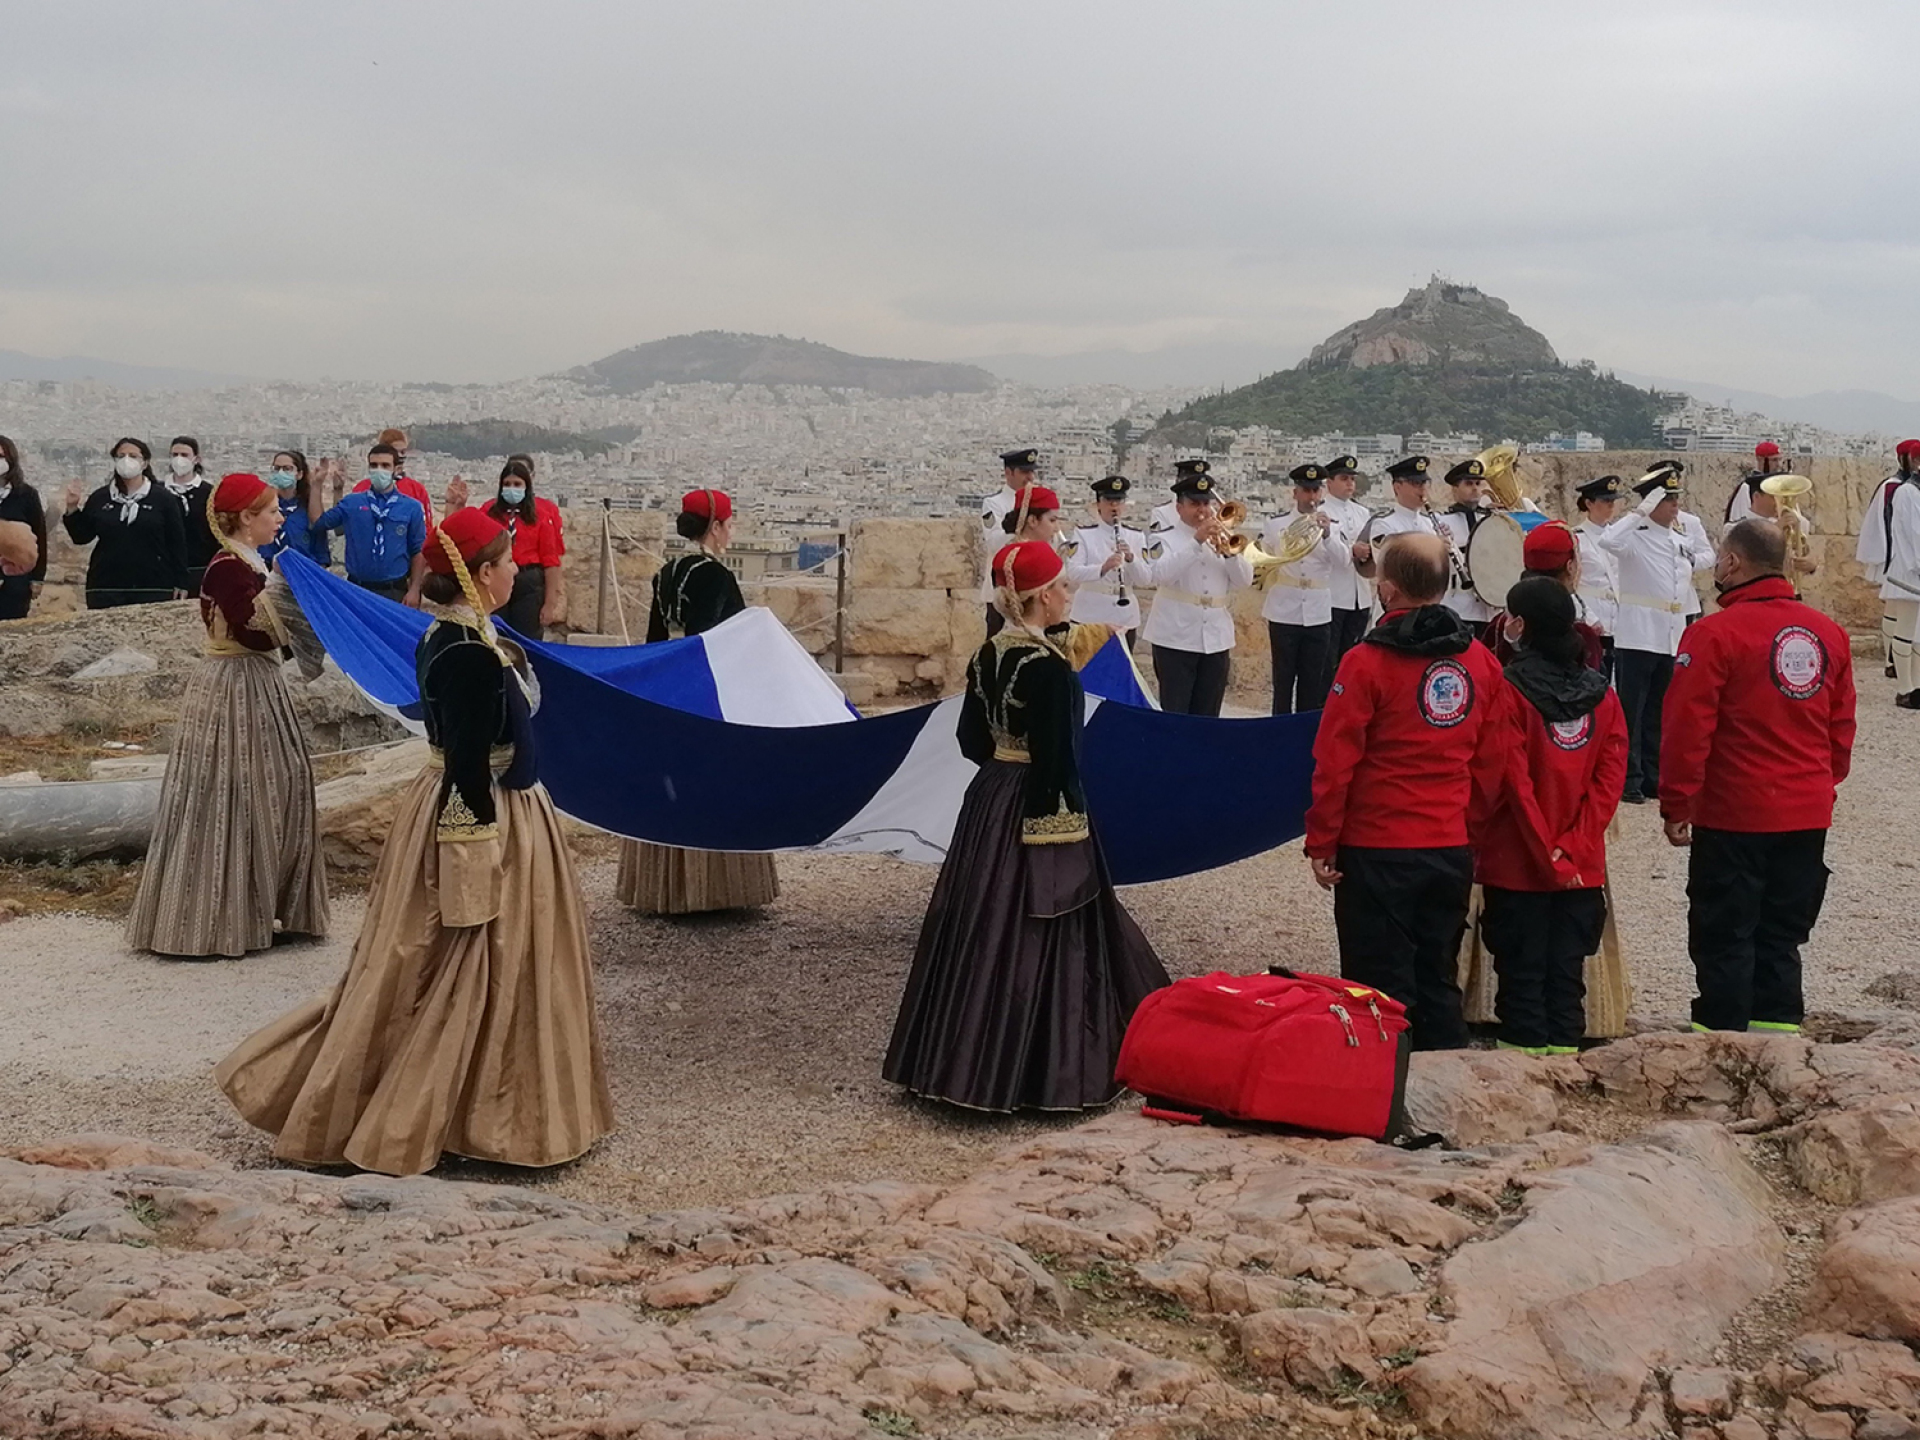 Κοπέλες από το Λύκειο των Ελληνίδων μεταφέρουν την Σημαία του Συλλόγου των Αθηνών στην Ακρόπολη.  12 Οκτωβρίου 2019